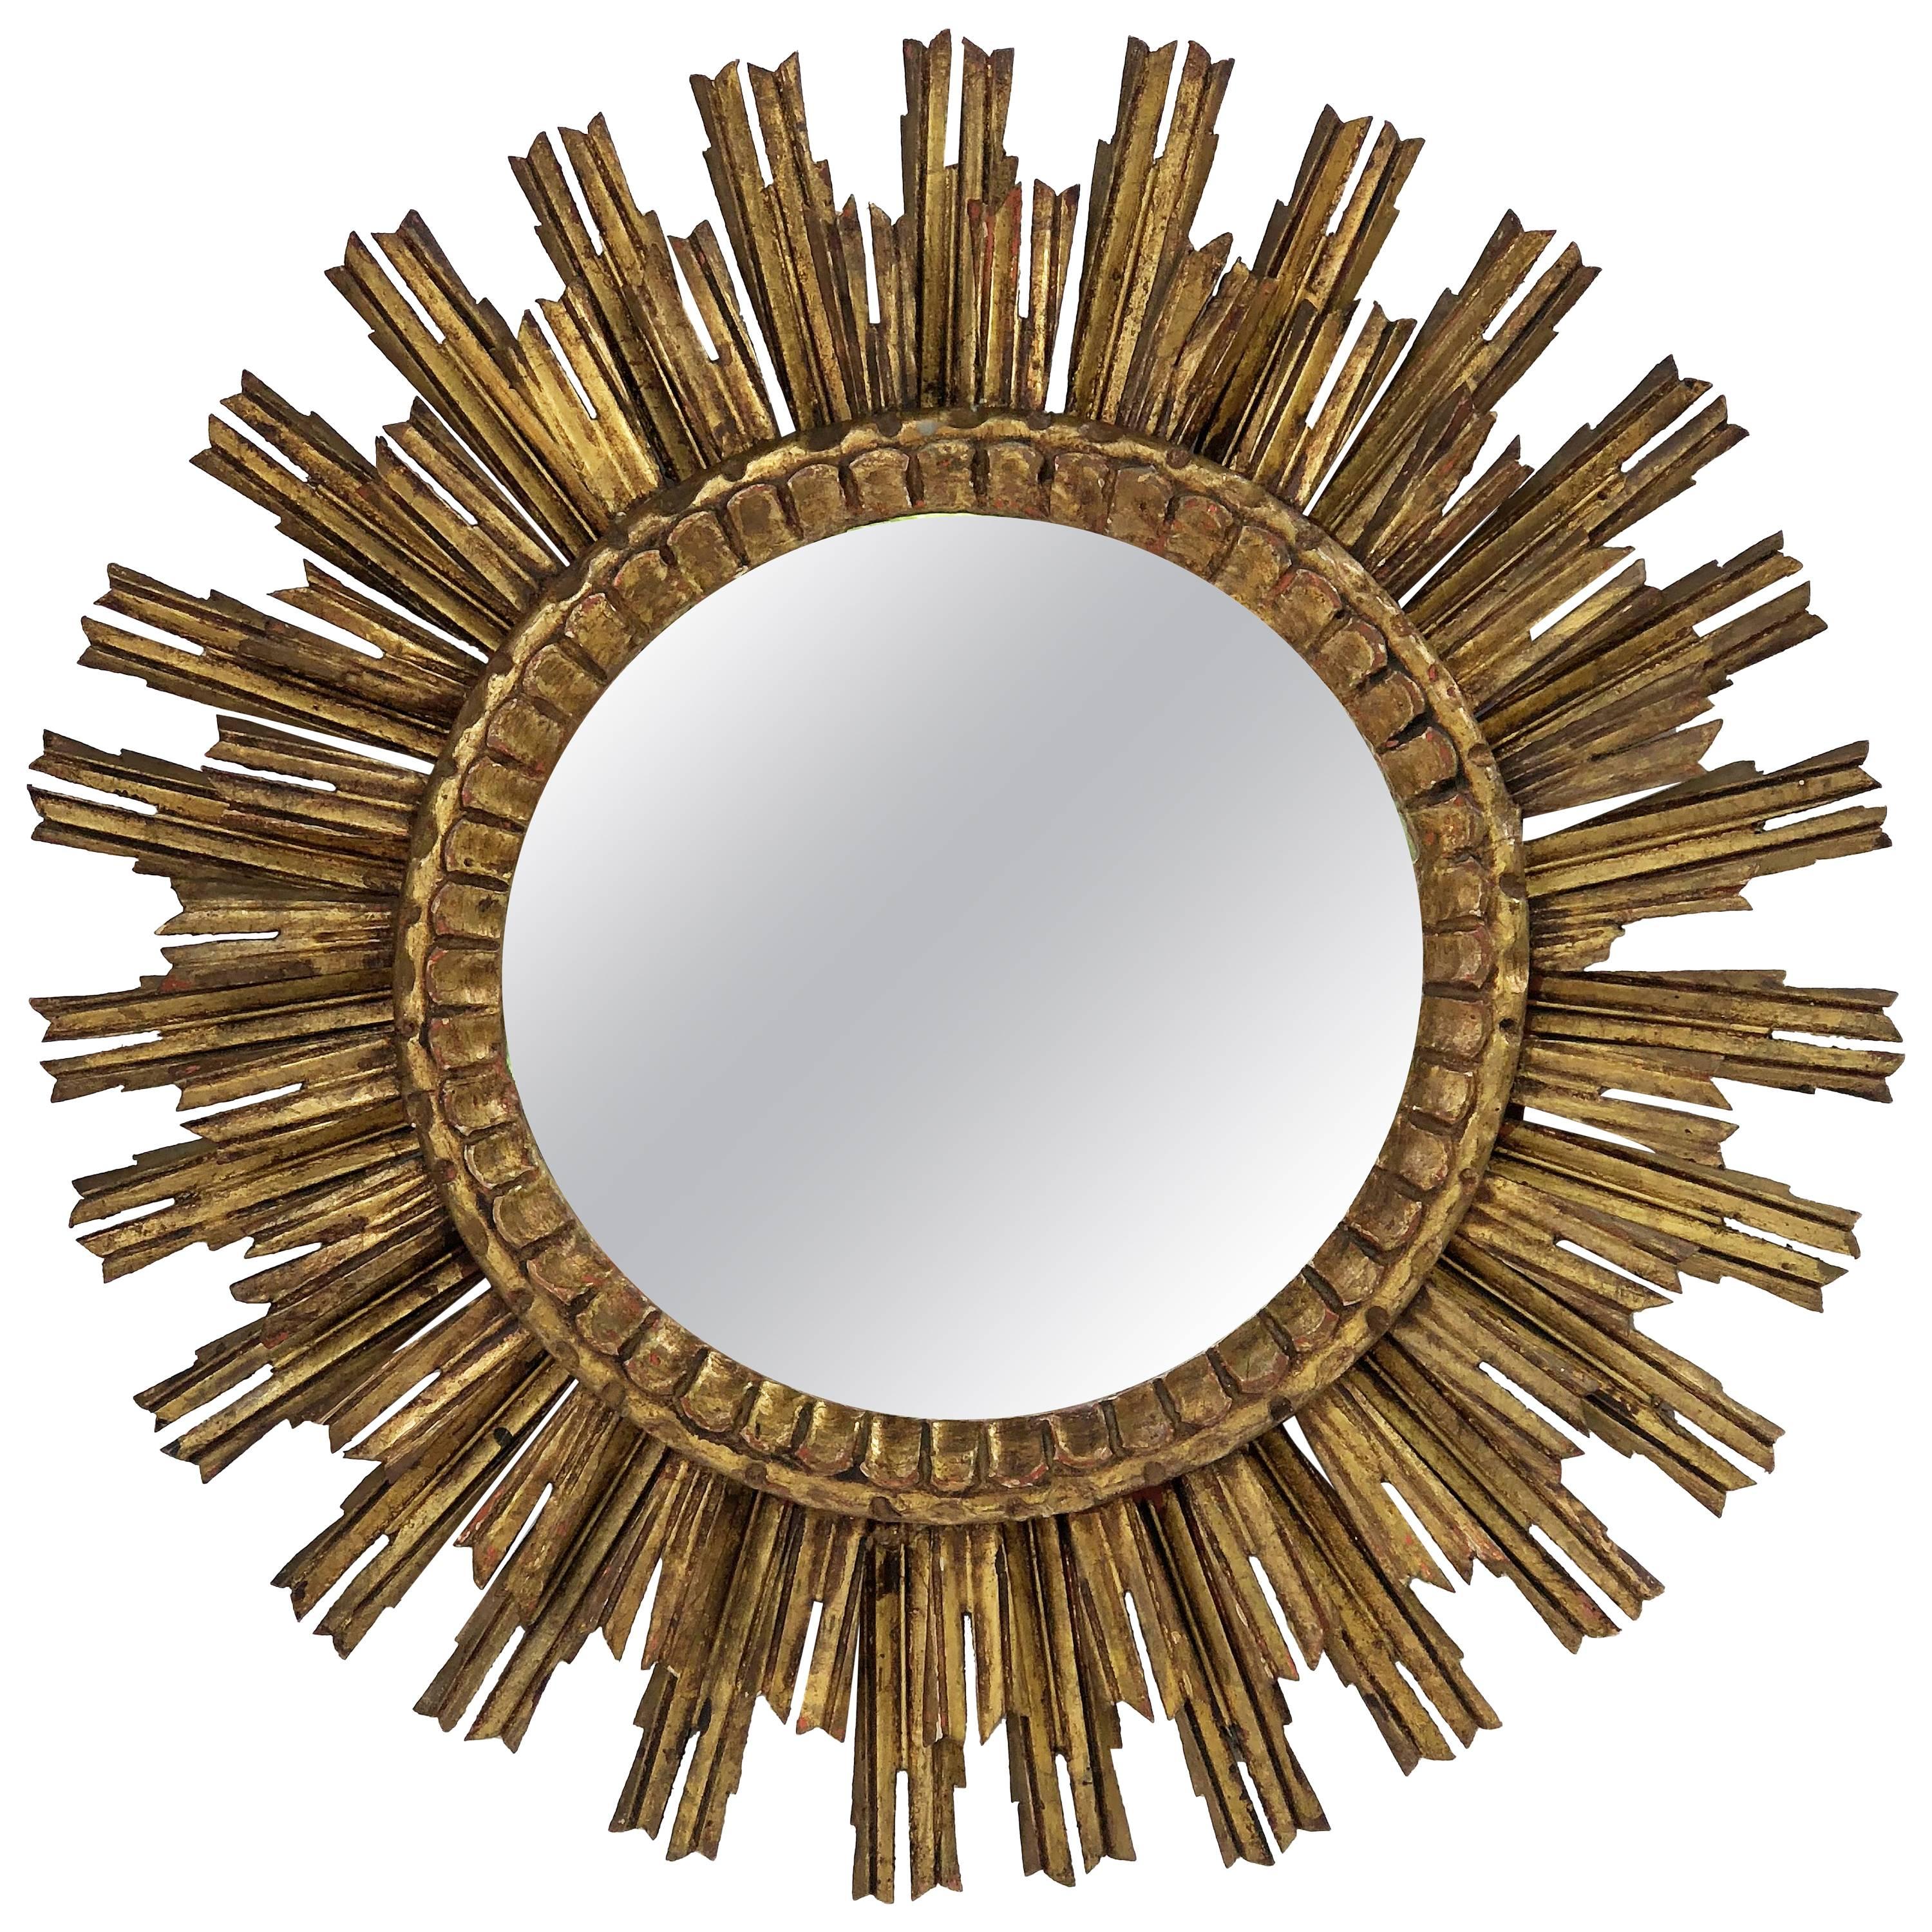 French Gilt Starburst or Sunburst Mirror (Diameter 29 1/2)